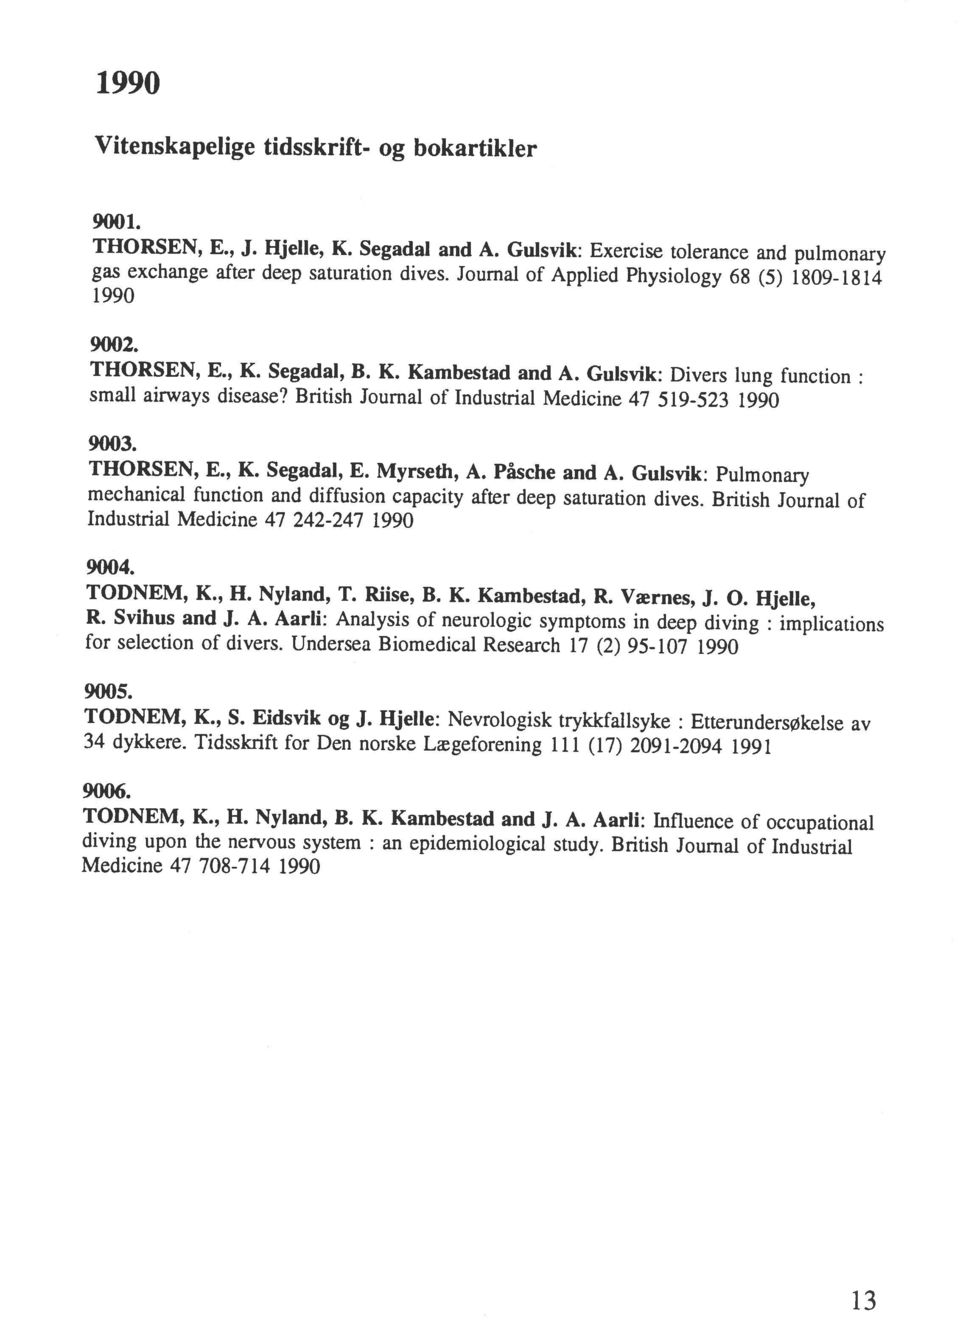 British Journal of Industrial TODNEM, K., H. Nyland, B. K. Kambestad and J. A. Aarli: Influence of occupational 34 dykkere. Tidsskrift for Den norske Lægeforening 111 (17) 2091-2094 1991 TODNEM, K.